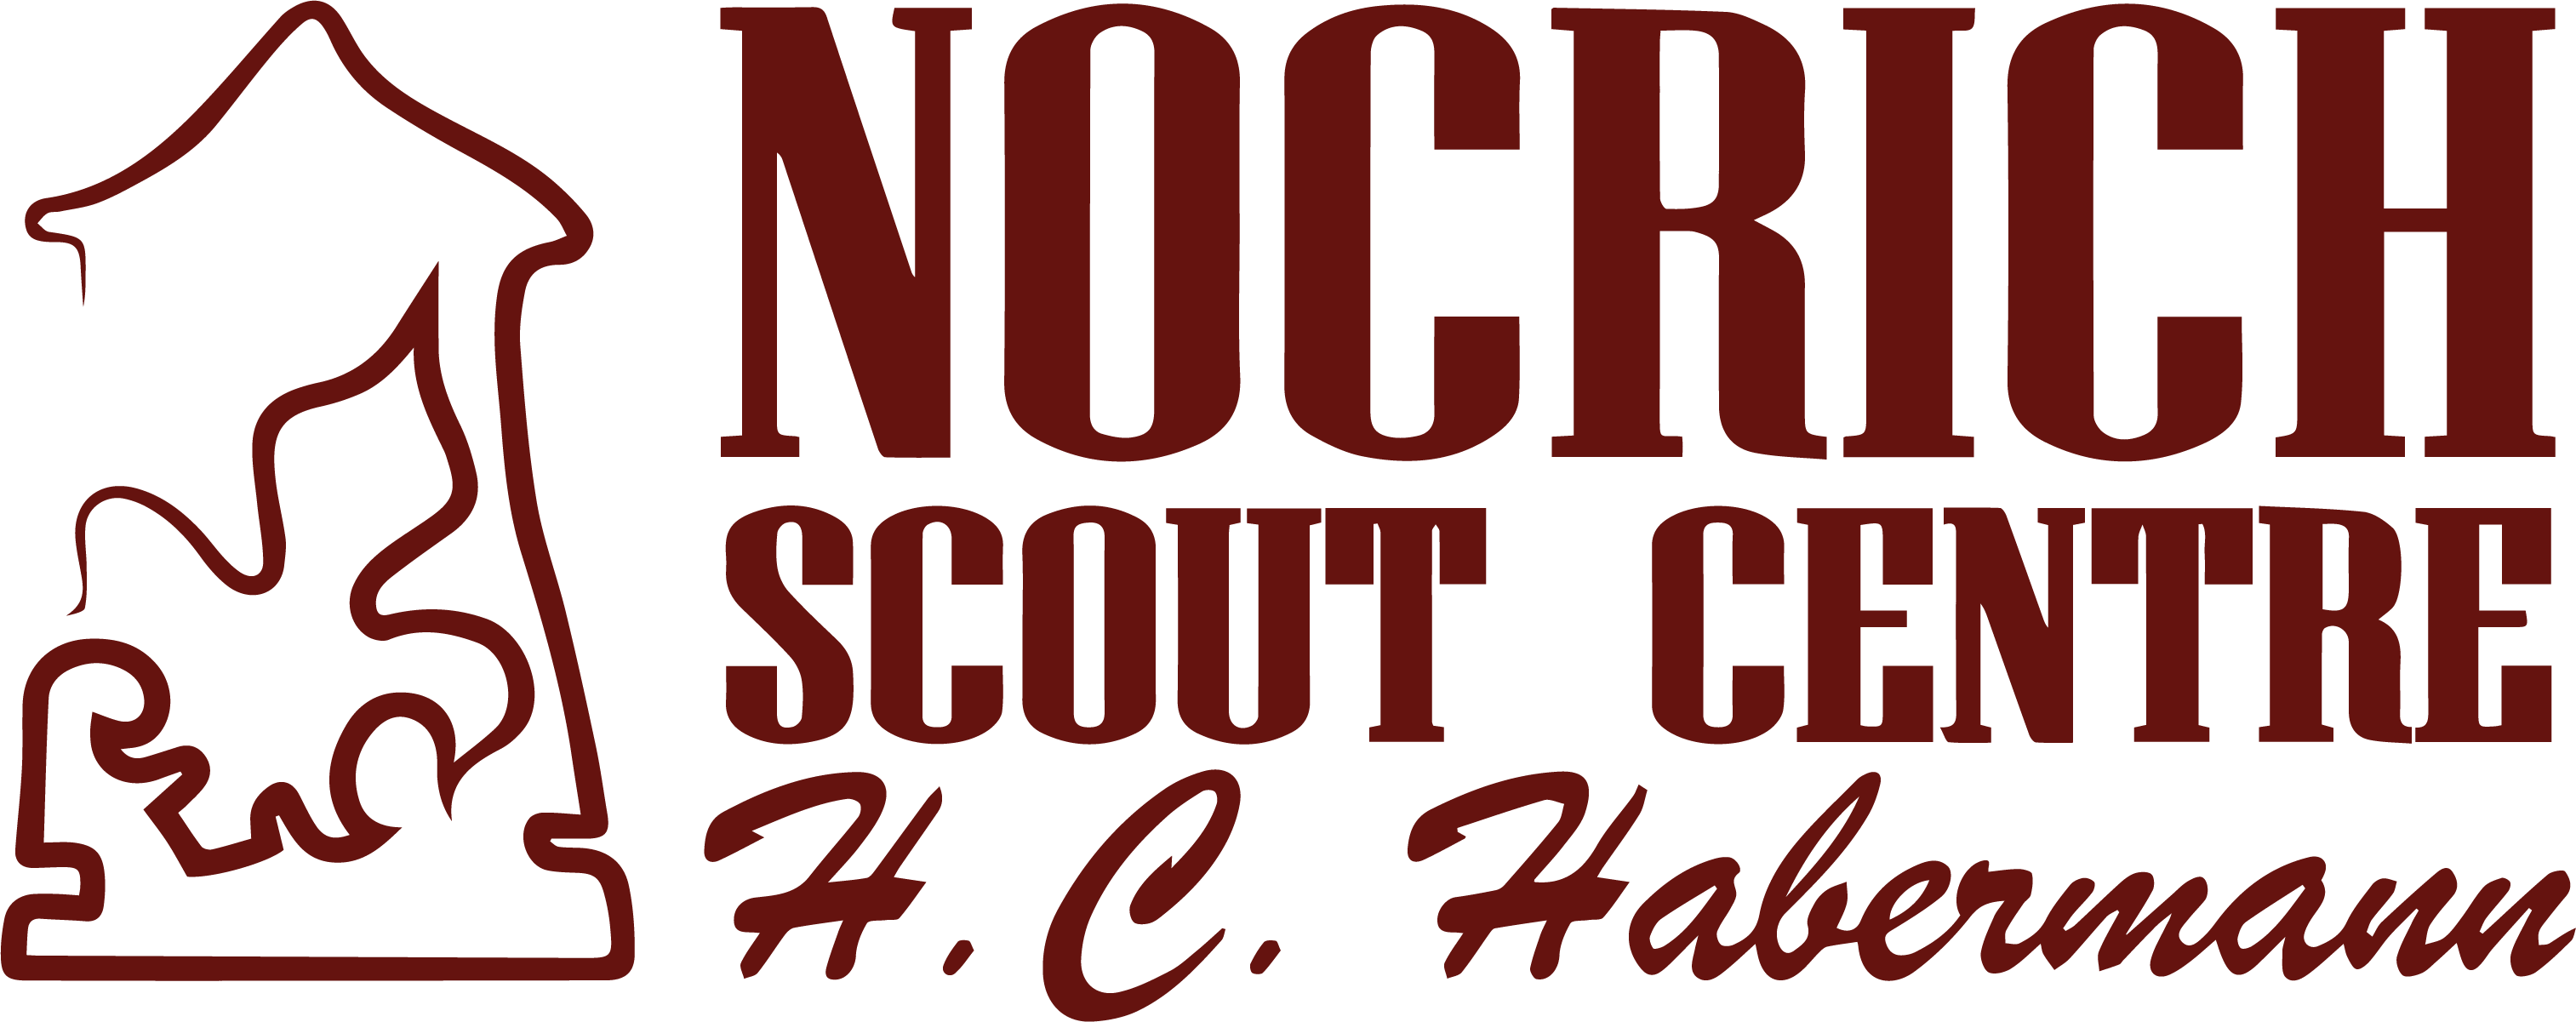 Centrul Cercetășesc Nocrich - H.C. Habermann - Filială a Organizației Naționale Cercetașii României logo